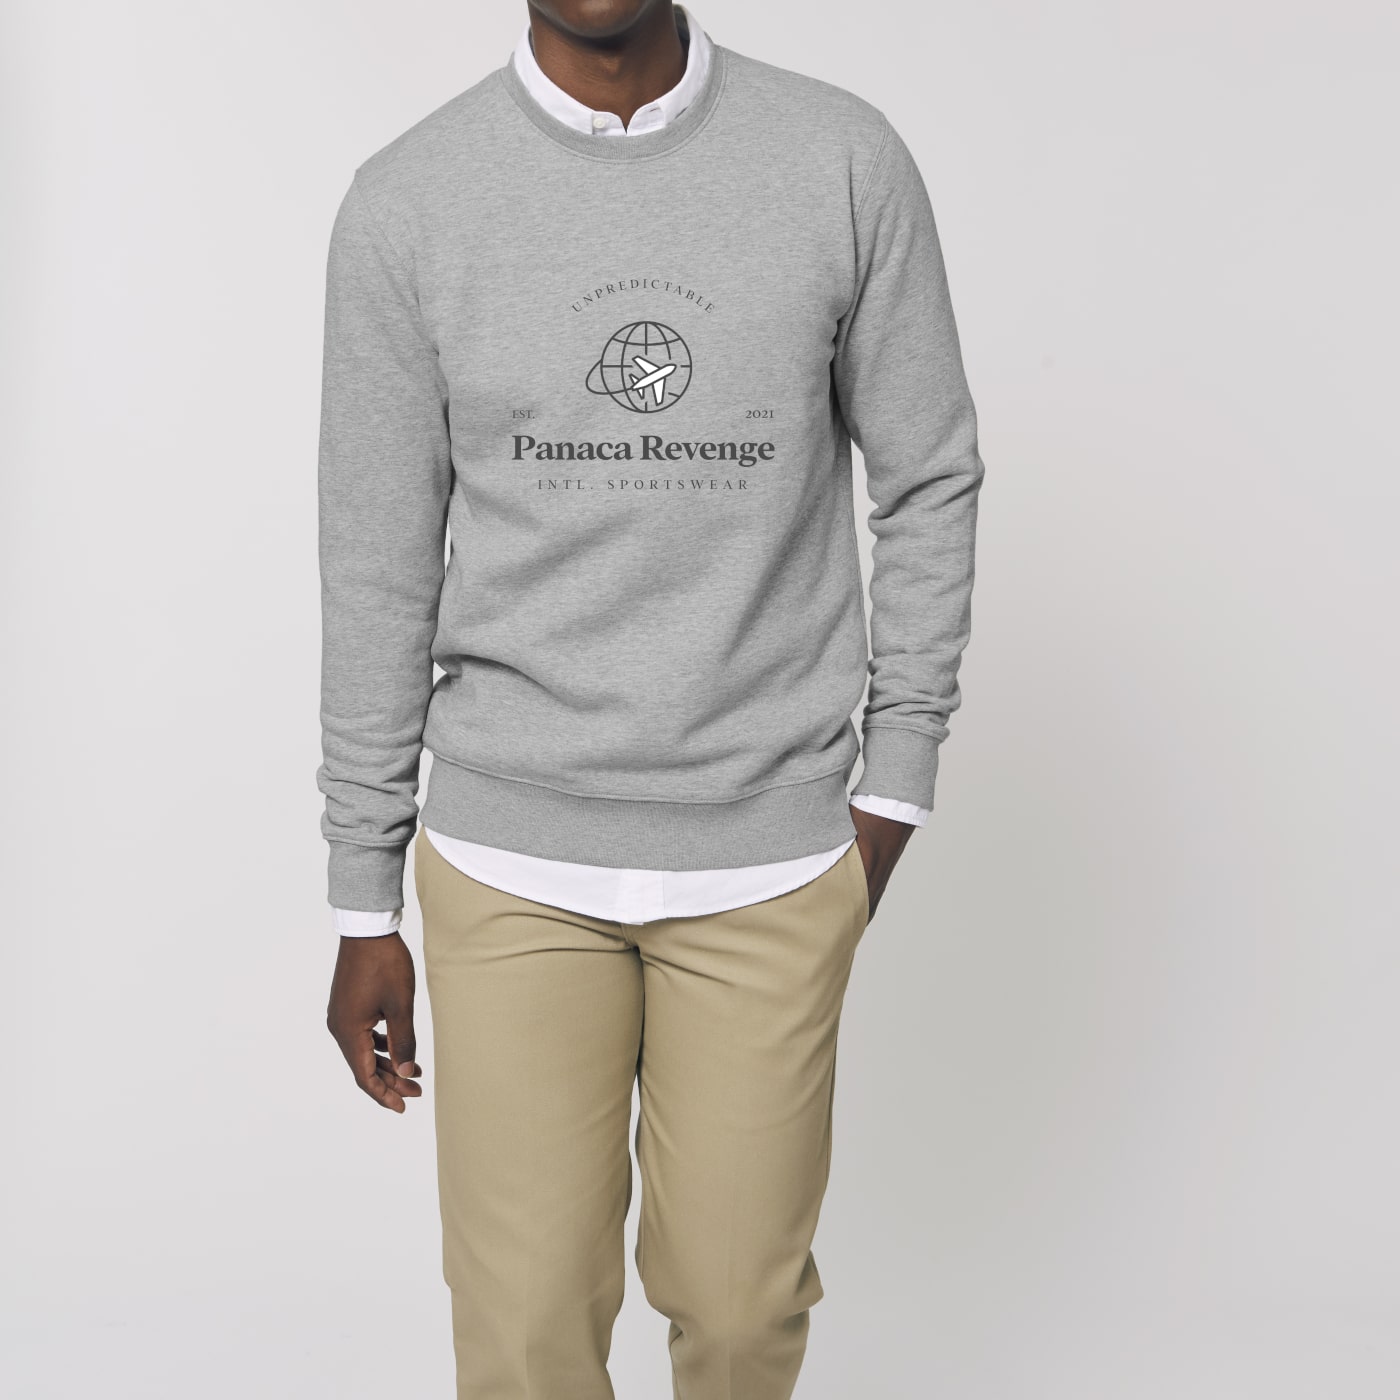 Sweatshirt Global